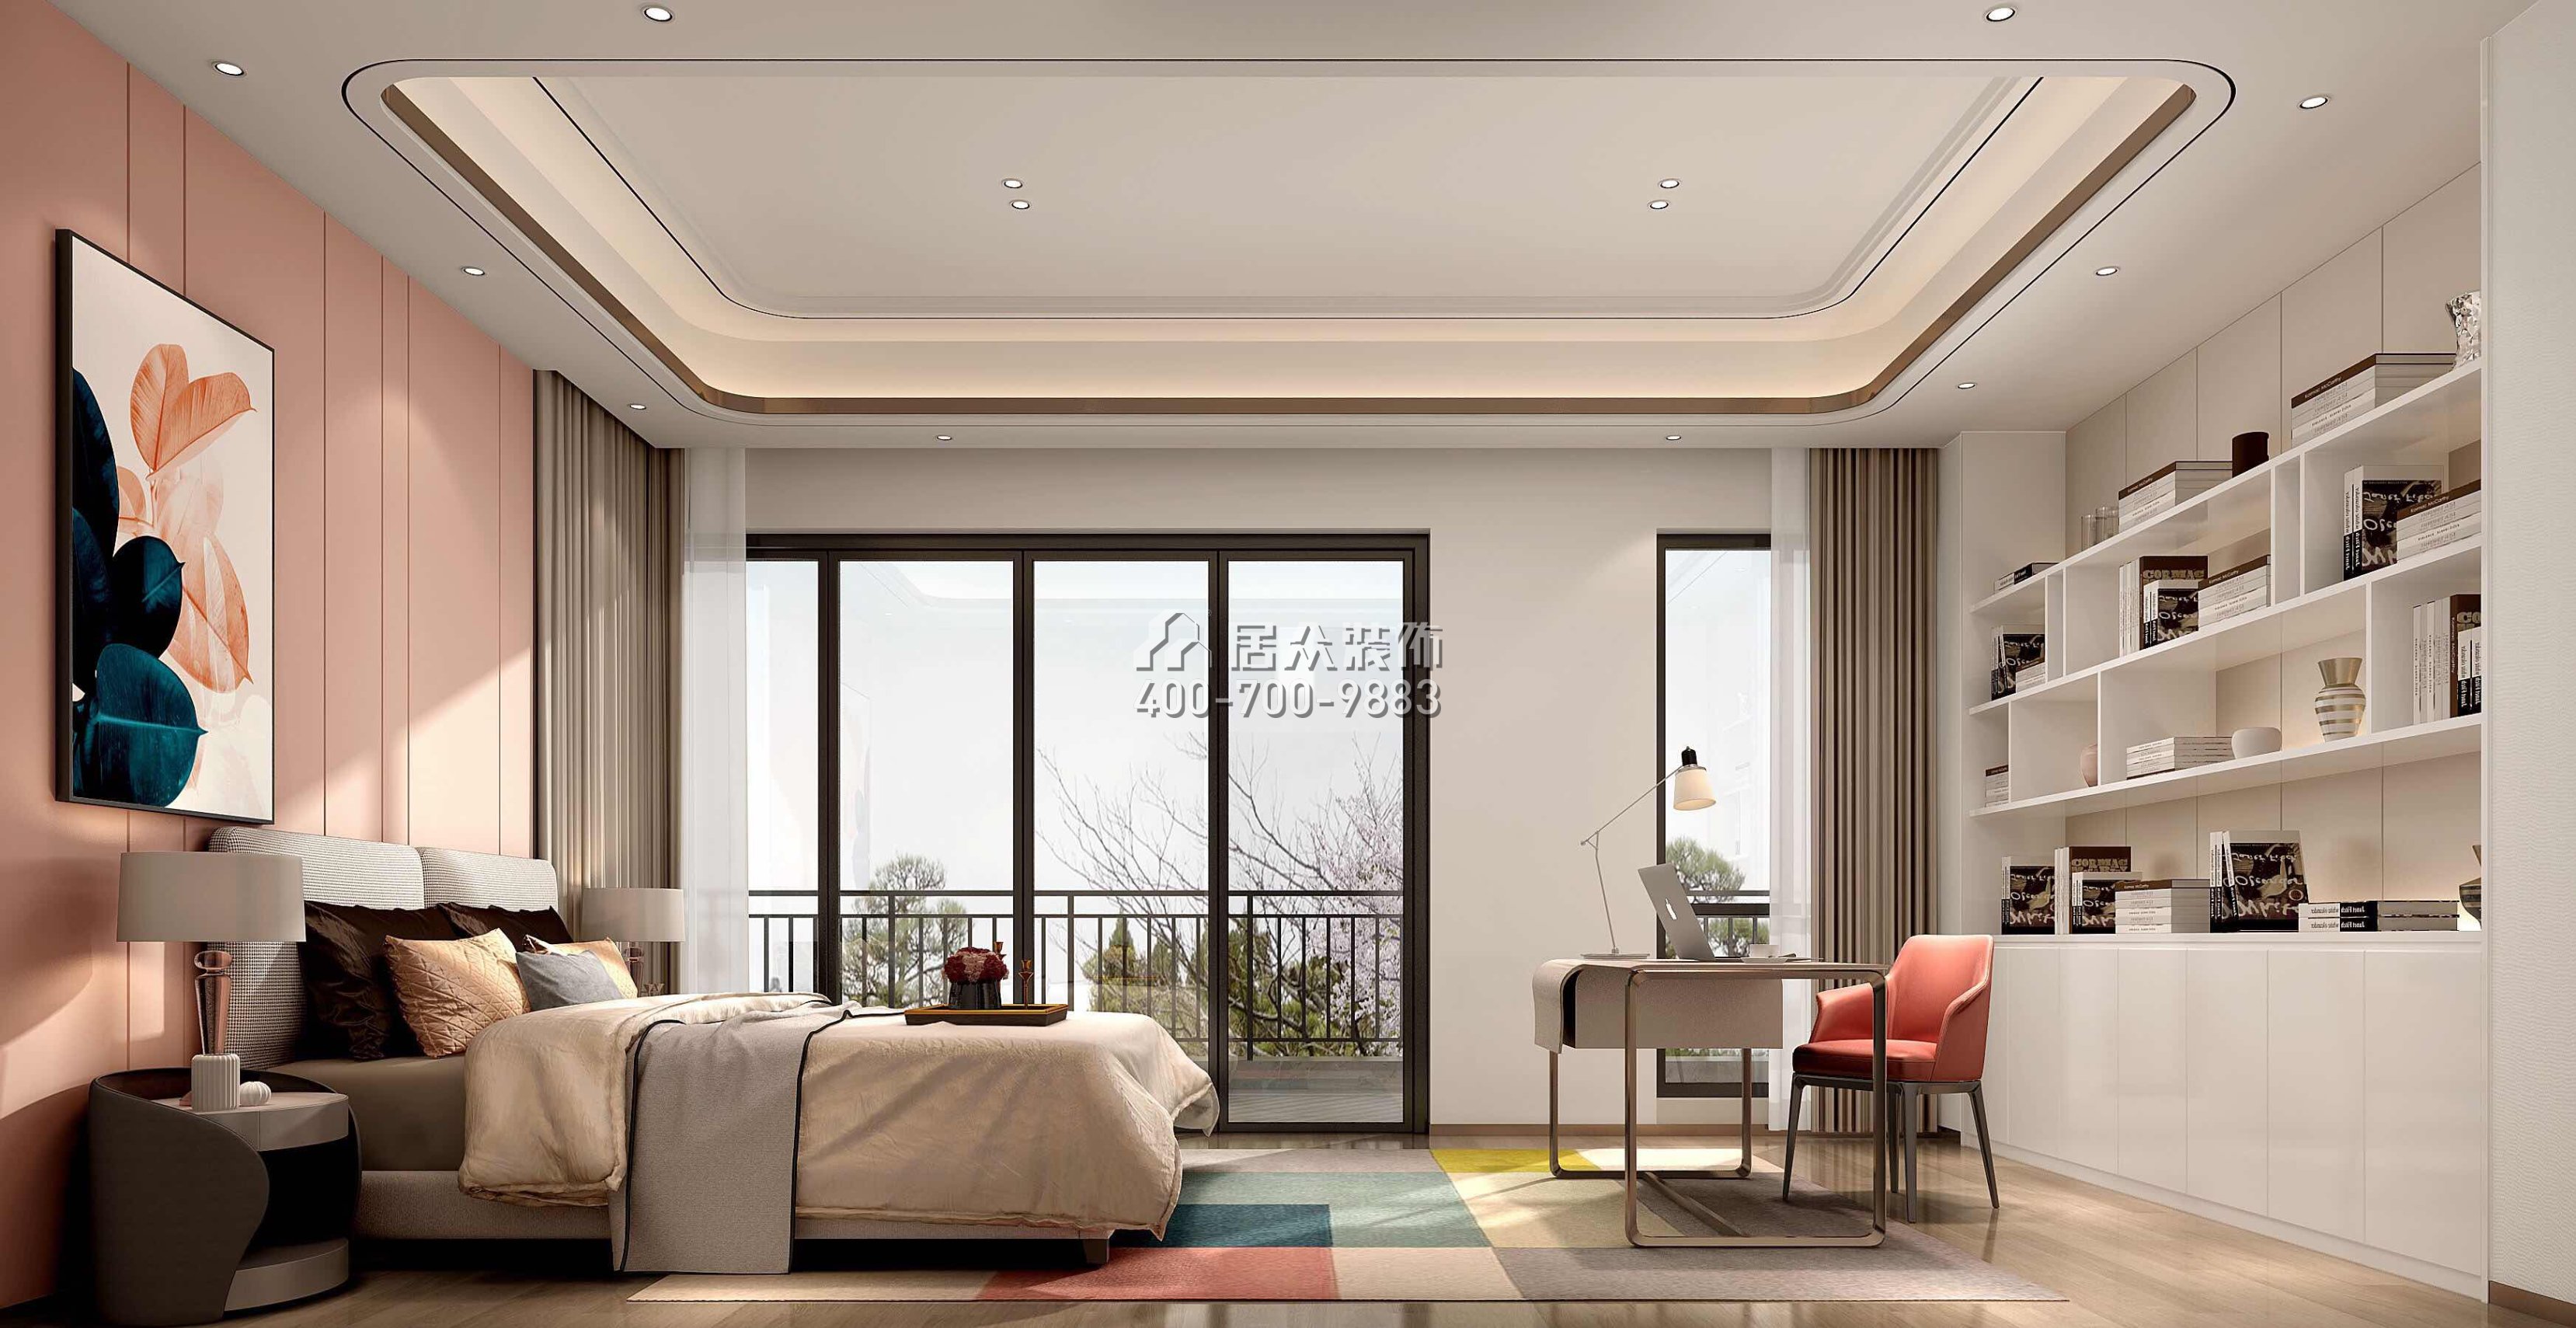 丽水佳园480平方米中式风格别墅户型卧室装修效果图